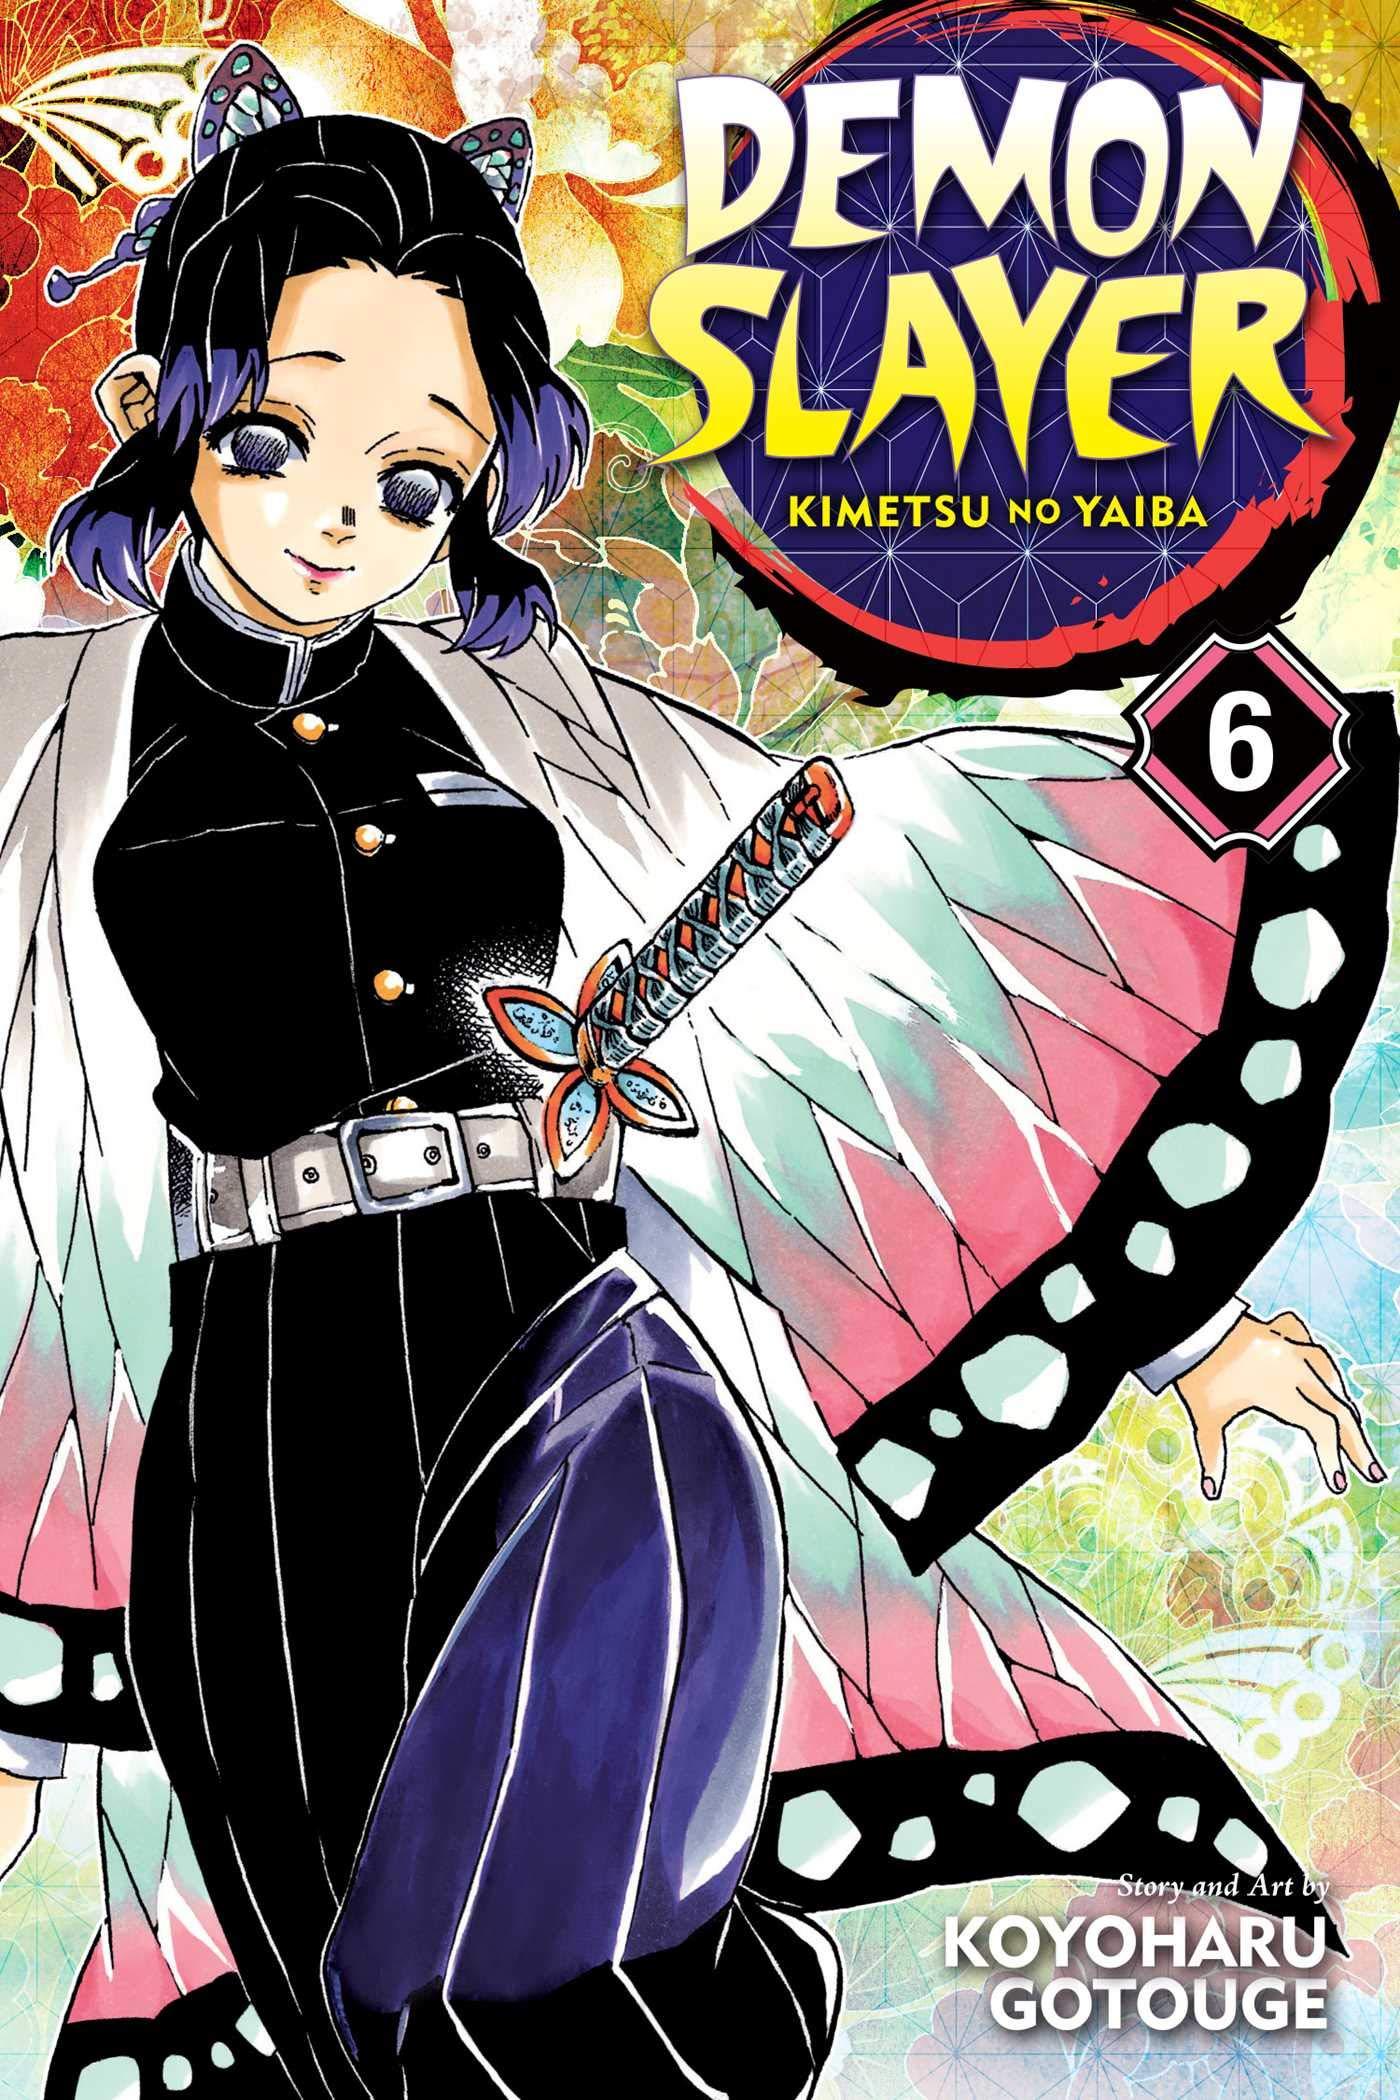 Demon Slayer: Kimetsu no Yaiba, Vol. 6 (6): Koyoharu Gotouge